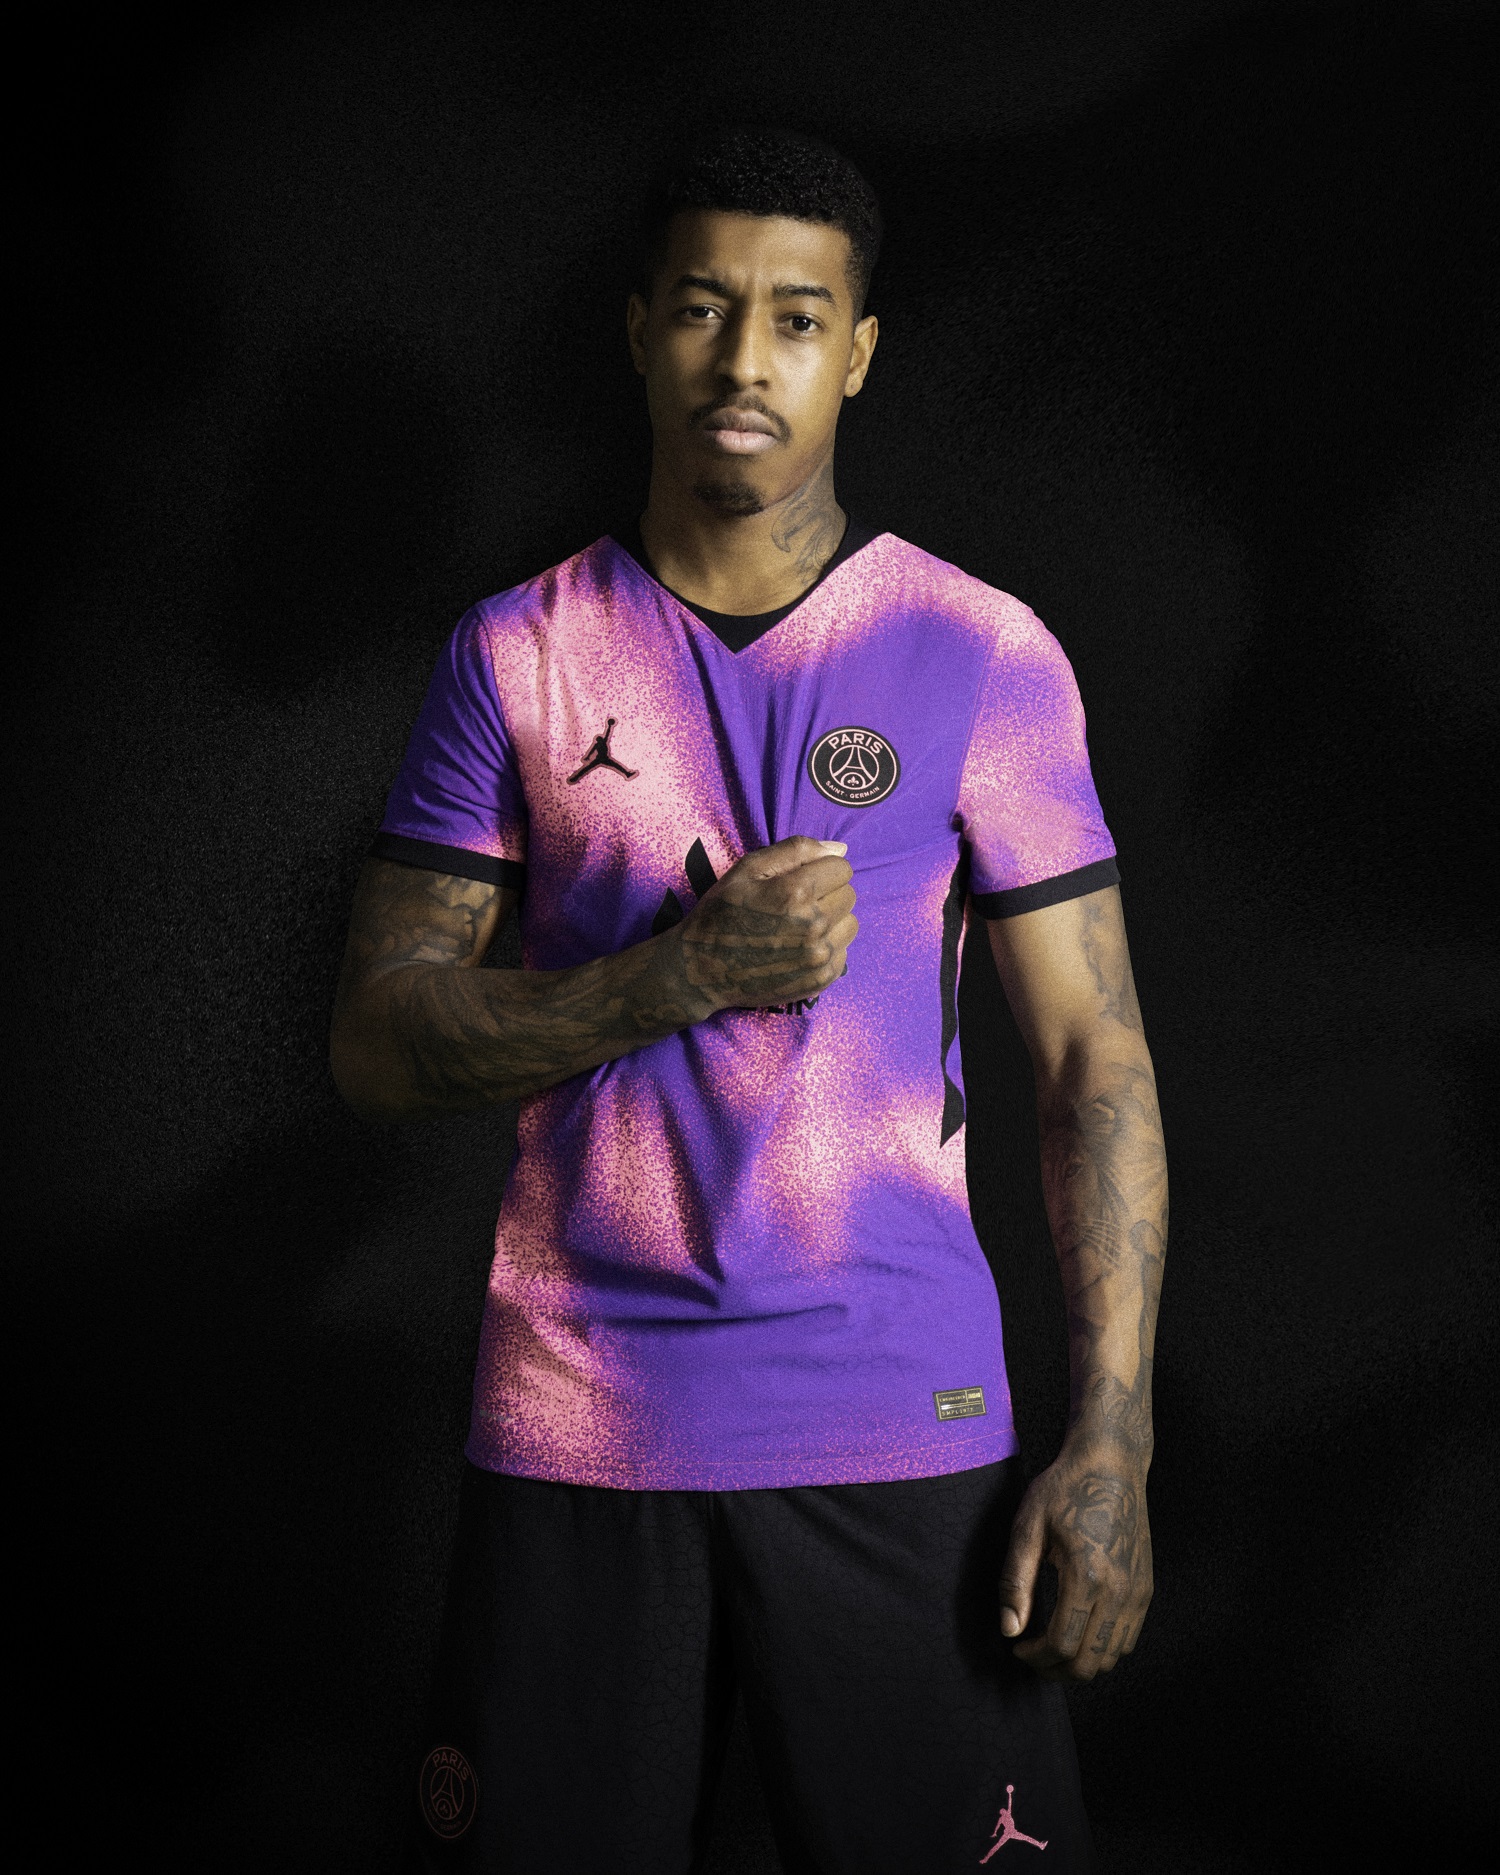 Le PSG présente un nouveau maillot rose et violet vraiment très étonnant